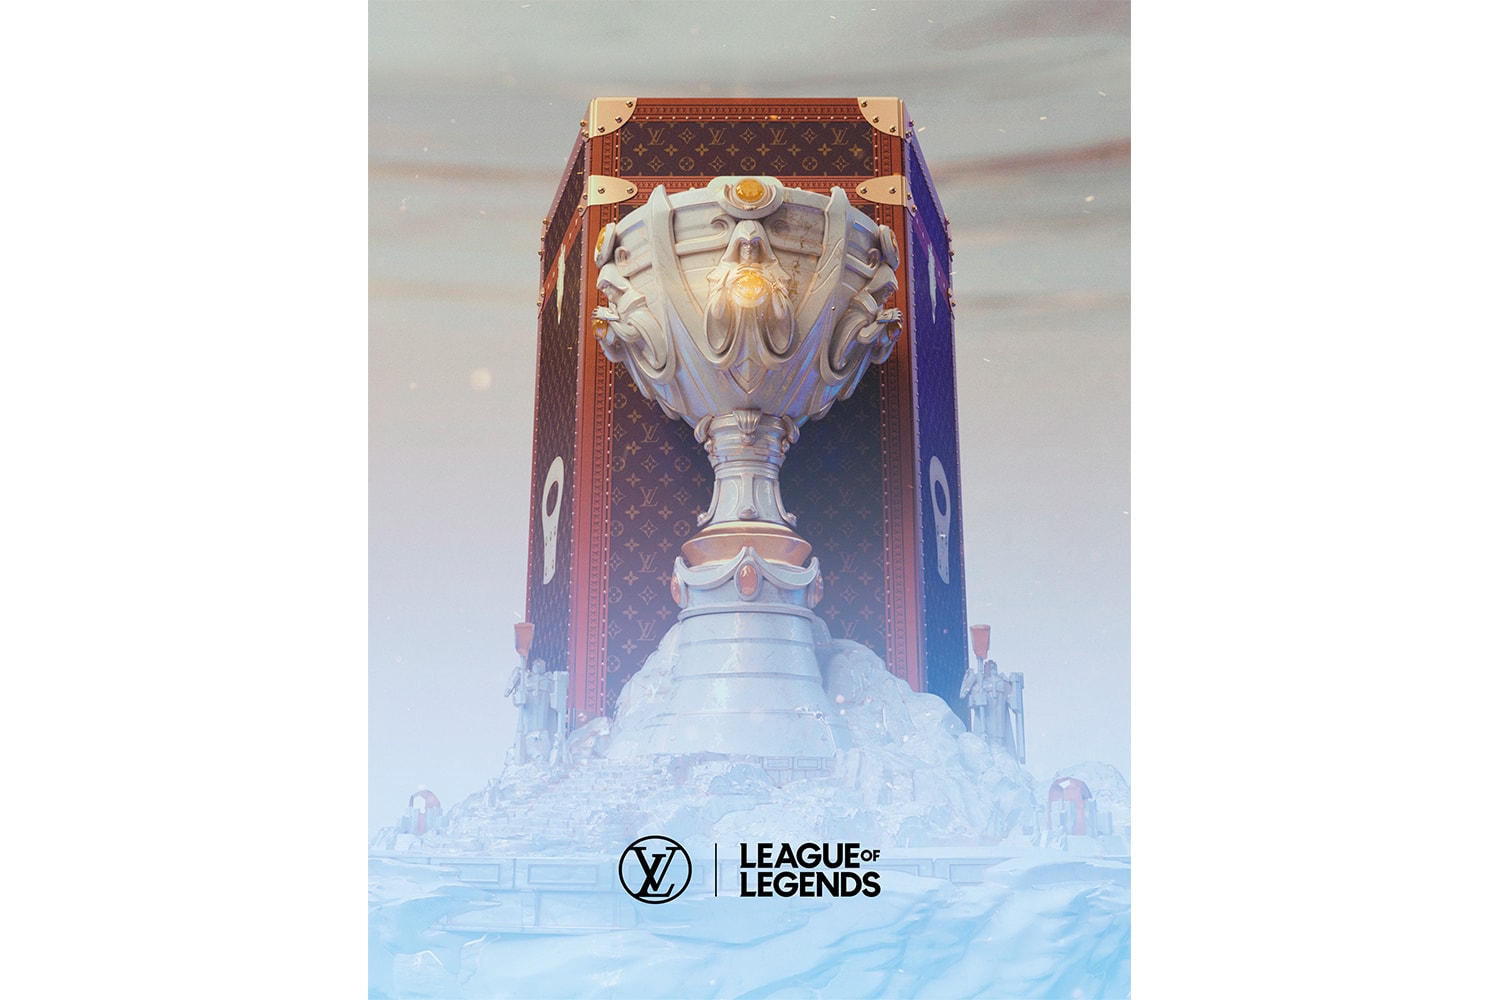 Riot Games Louis Vuitton League of Legends World Championship 2019 Partnership Announcement